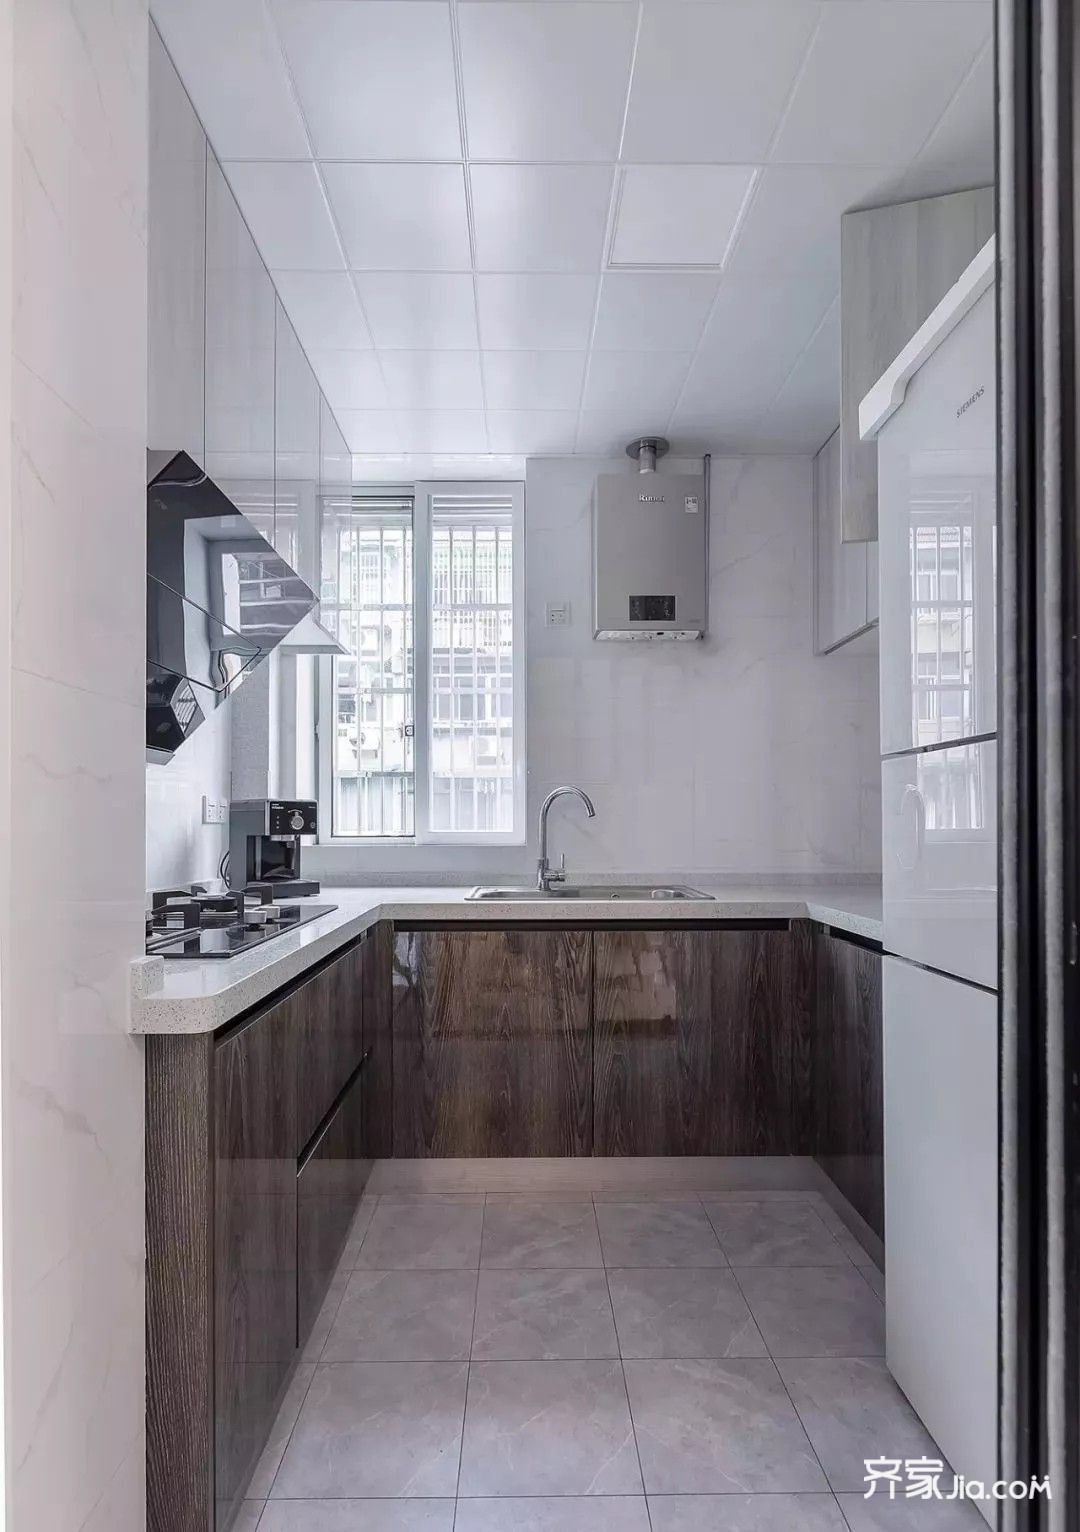 u型厨房,利用浅色作基调,放大视觉,浅木灰色的橱柜搭配浅灰色地砖